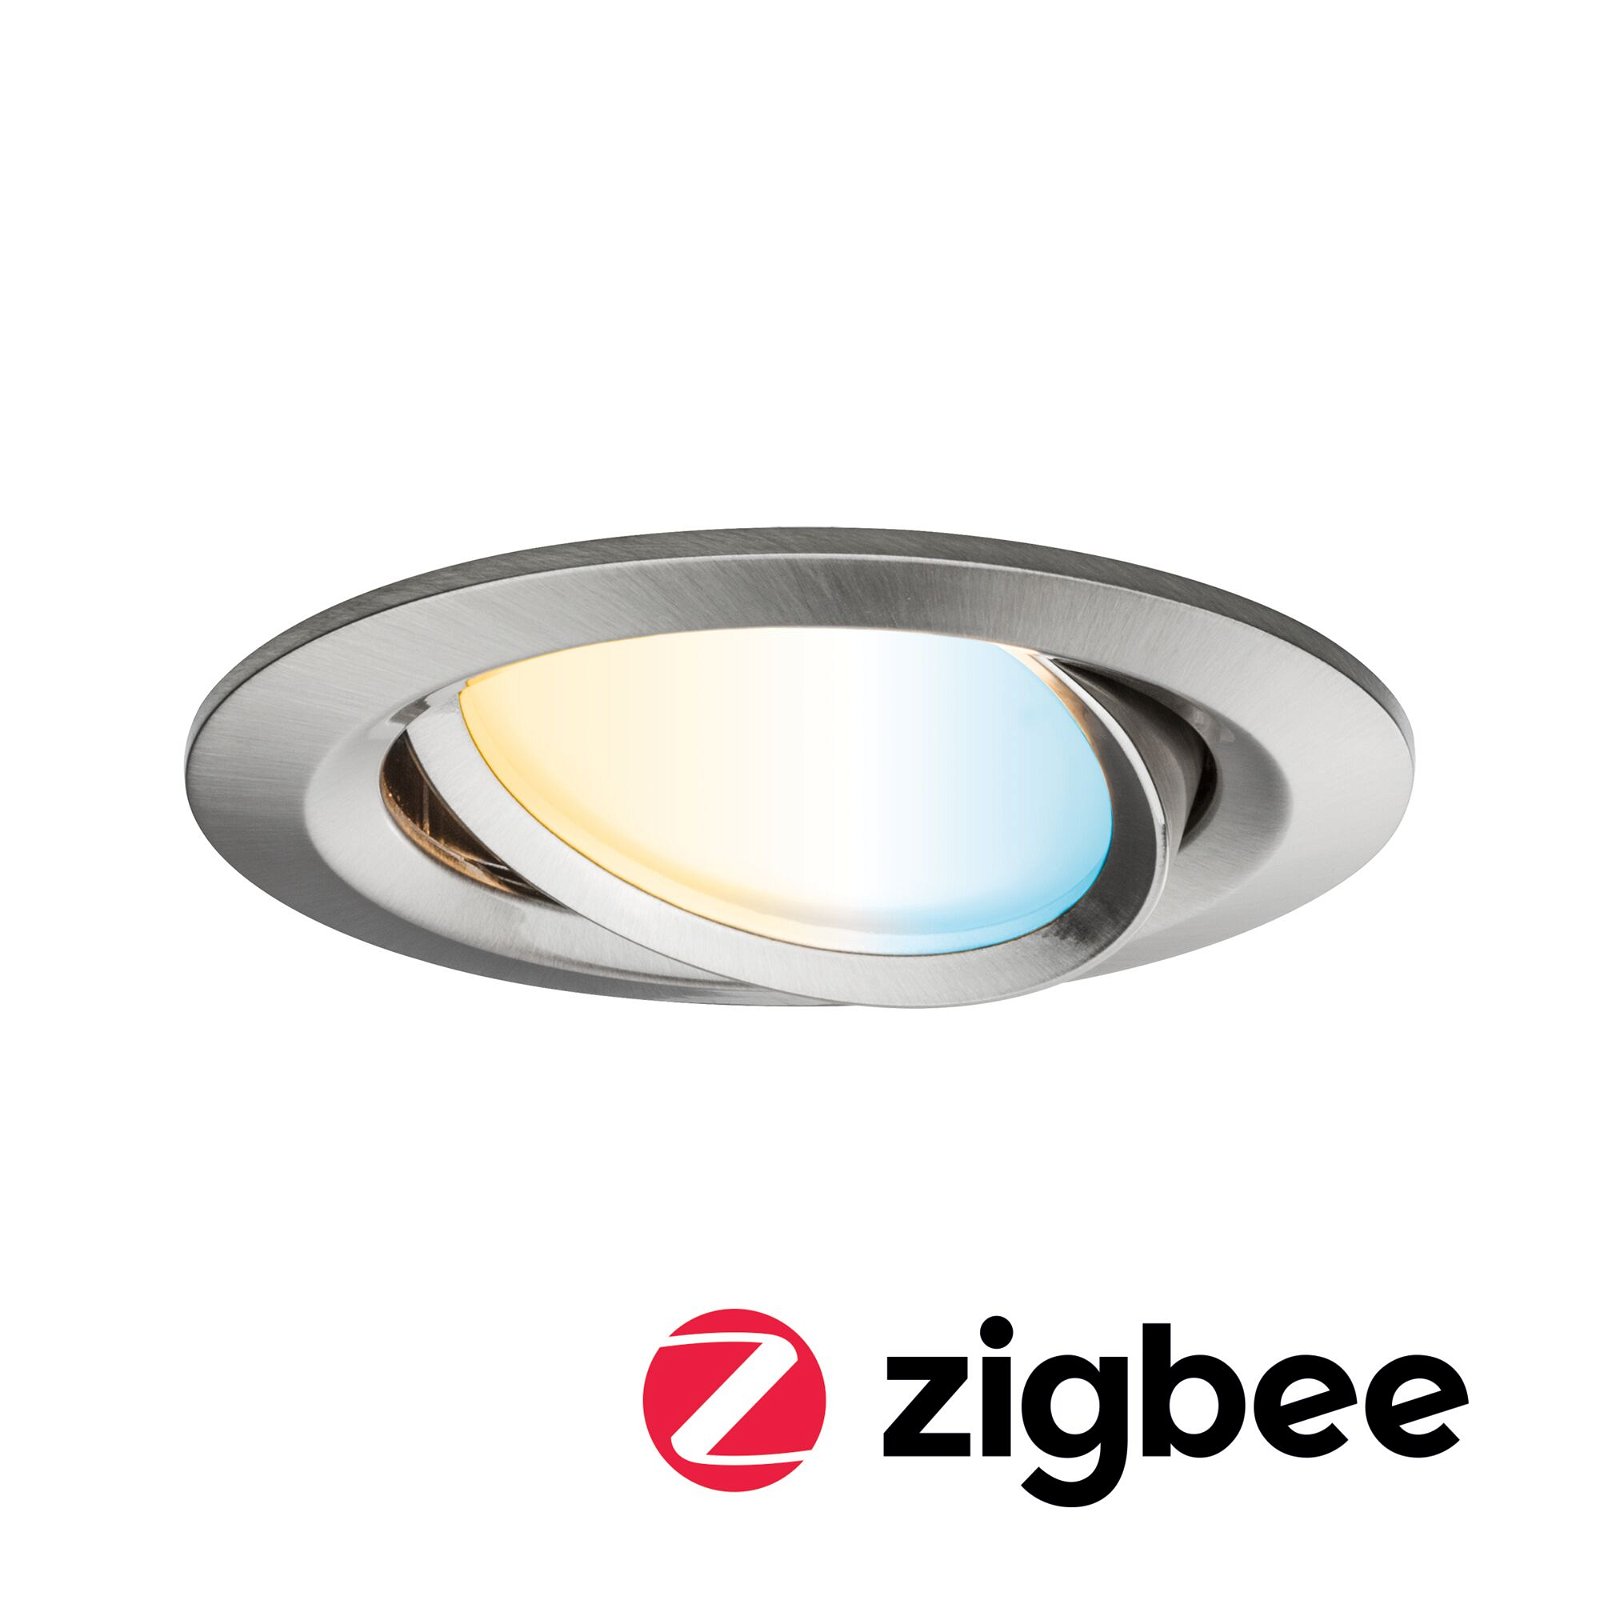 LED Einbauleuchte Smart Home Zigbee Nova Plus Coin schwenkbar rund 84mm 50° Coin 6W 470lm 230V Tunable White Eisen gebürstet